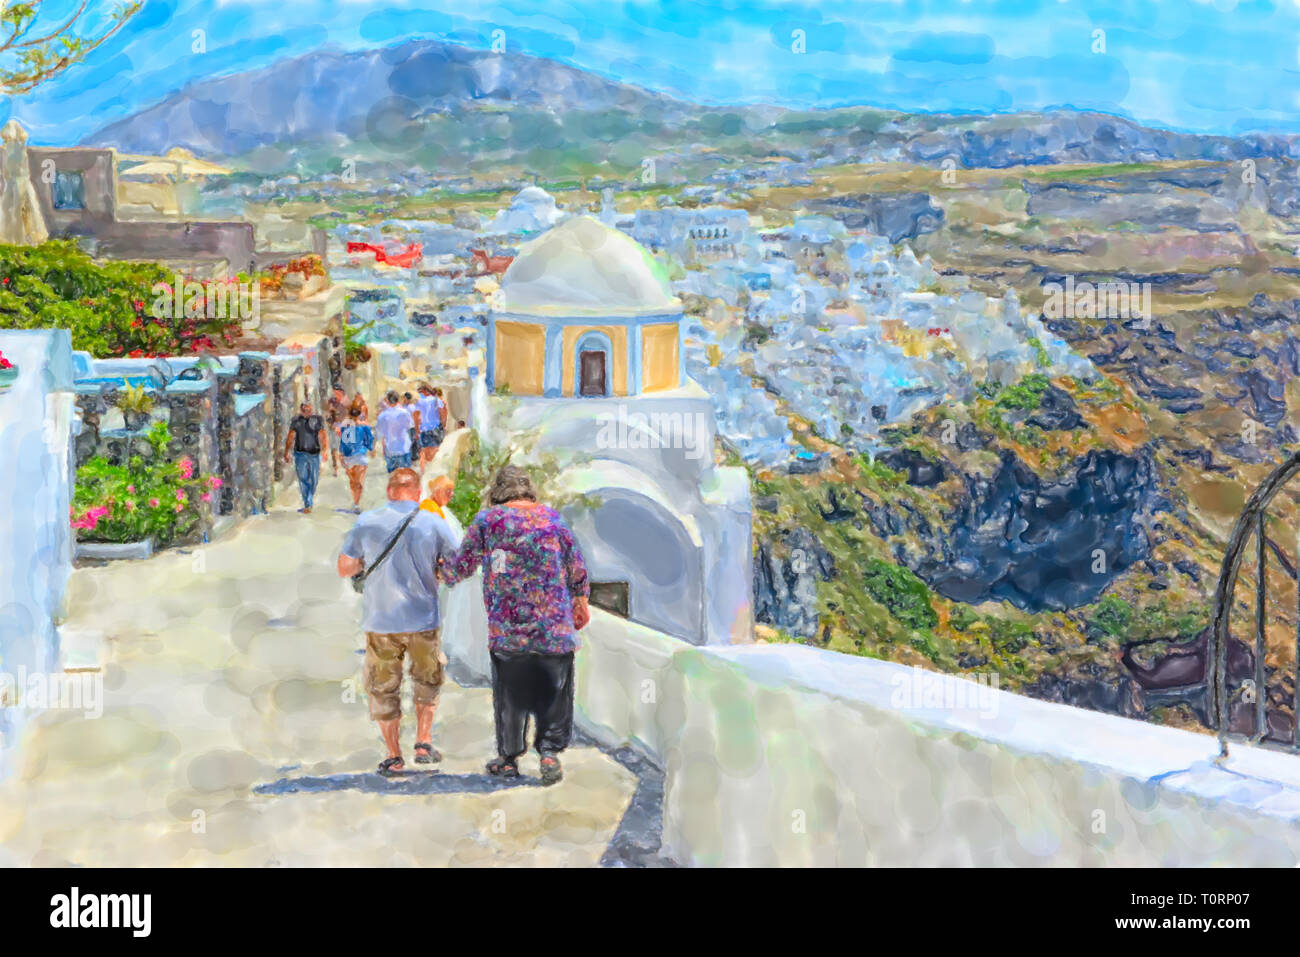 Illustration à l'aquarelle de l'île grecque de Santorin Fira Town. Les gens qui marchent à travers le paysage urbain. Banque D'Images